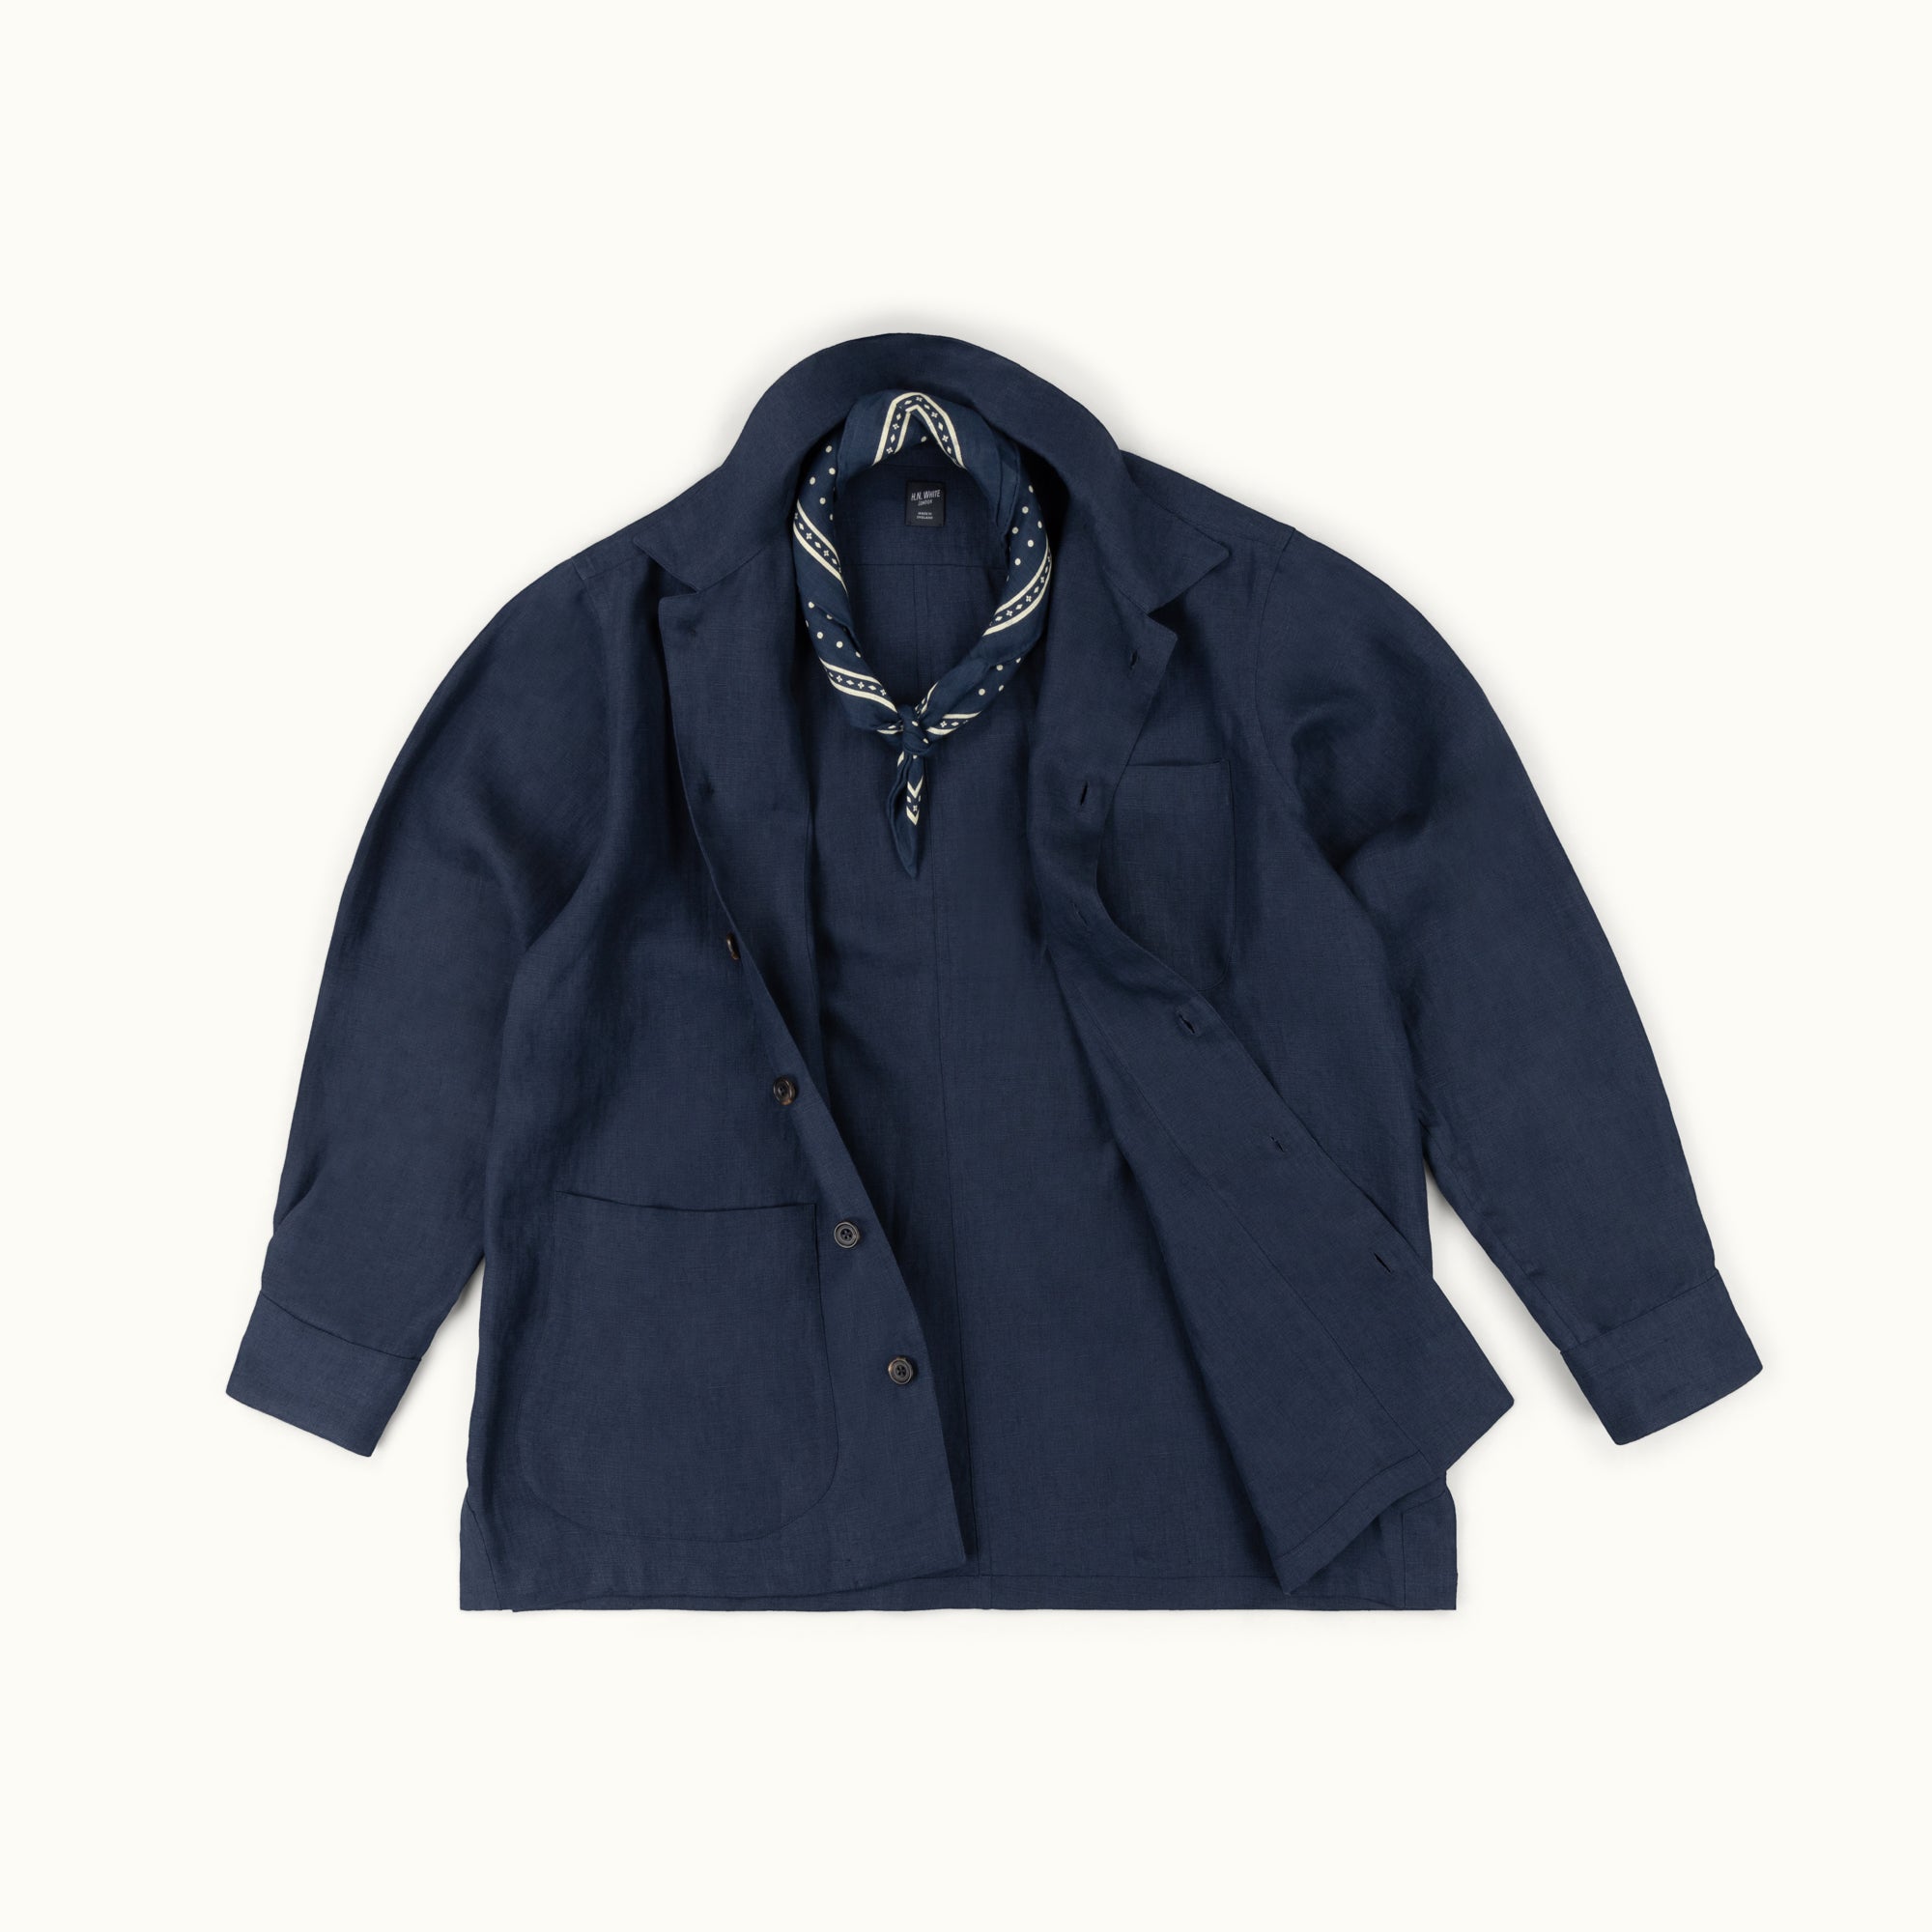 Washed Navy Linen Chore Jacket